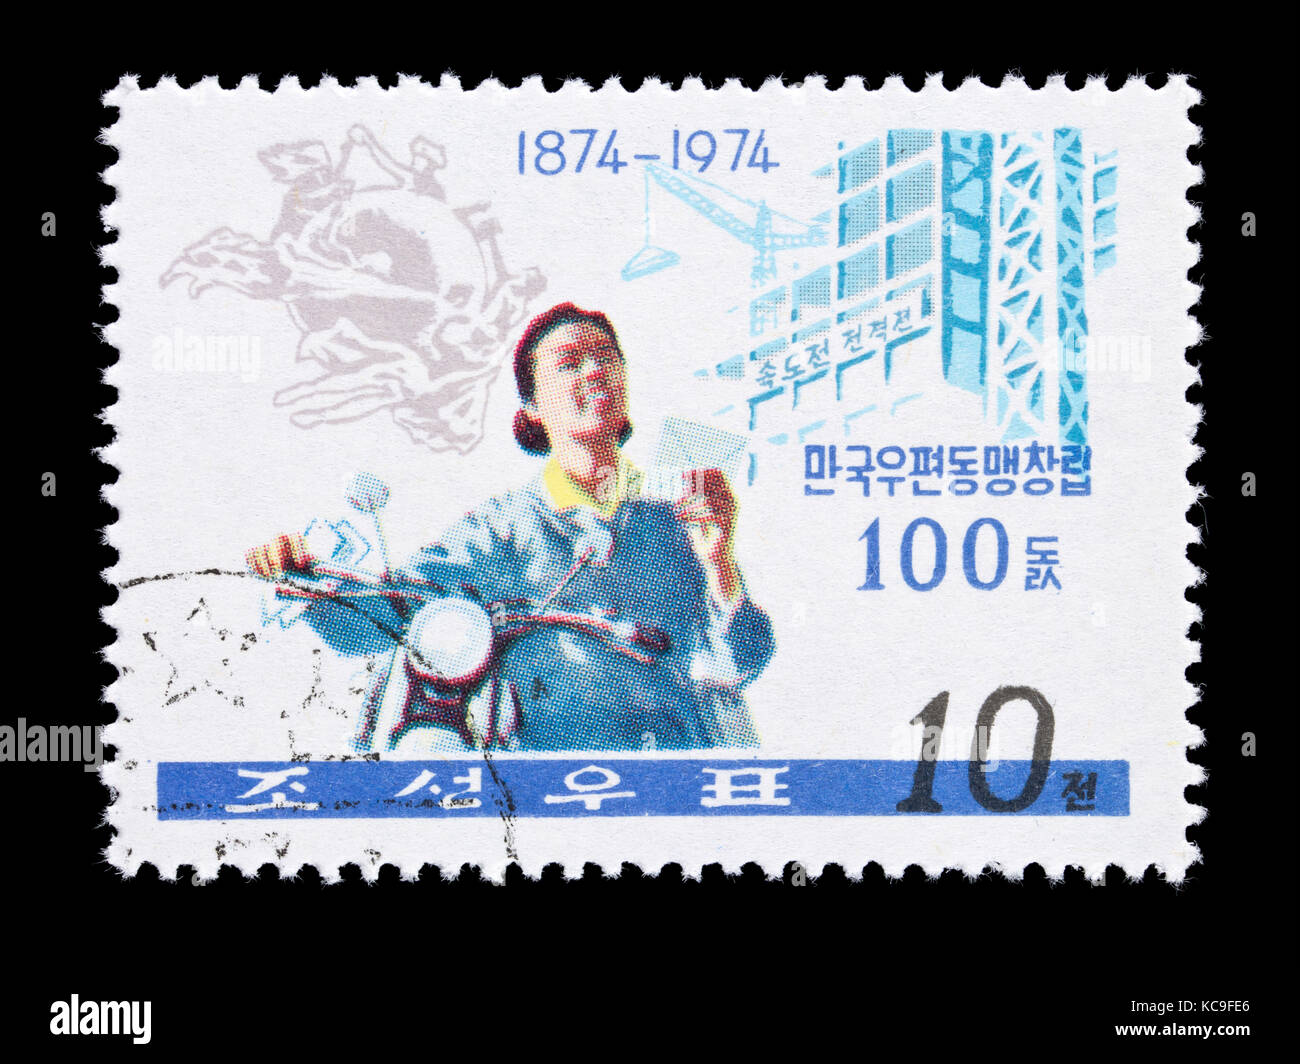 Francobollo dalla Corea del Nord che raffigura l'Unione postale universale emblema, postwoman e sito in costruzione. Foto Stock